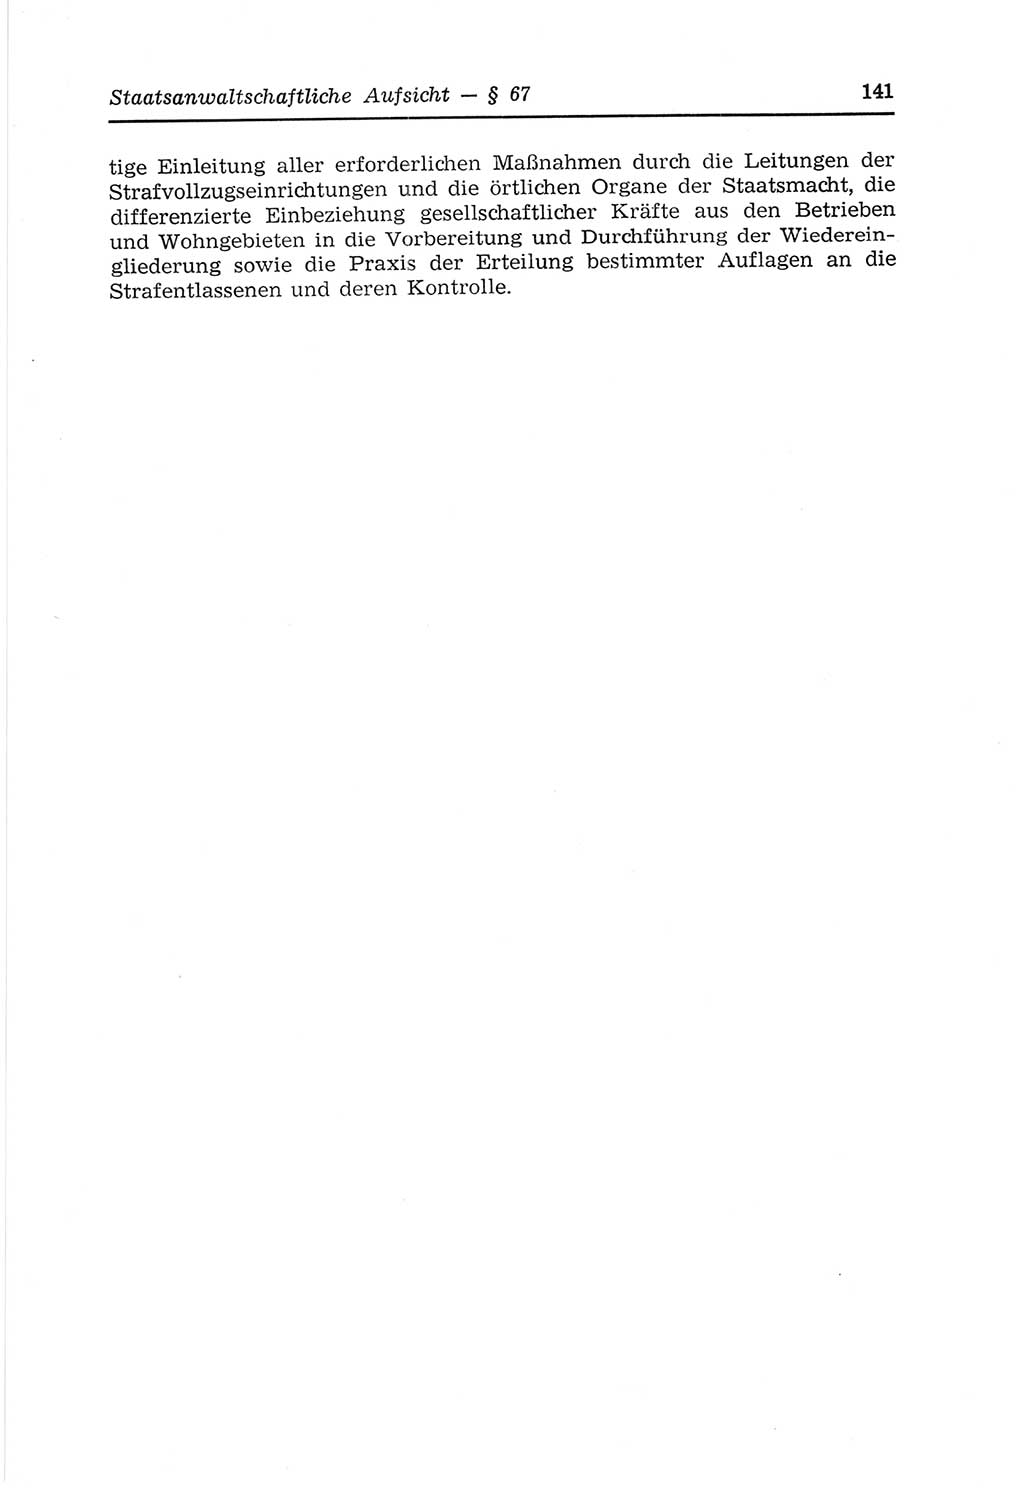 Strafvollzugs- und Wiedereingliederungsgesetz (SVWG) der Deutschen Demokratischen Republik (DDR) 1968, Seite 141 (SVWG DDR 1968, S. 141)